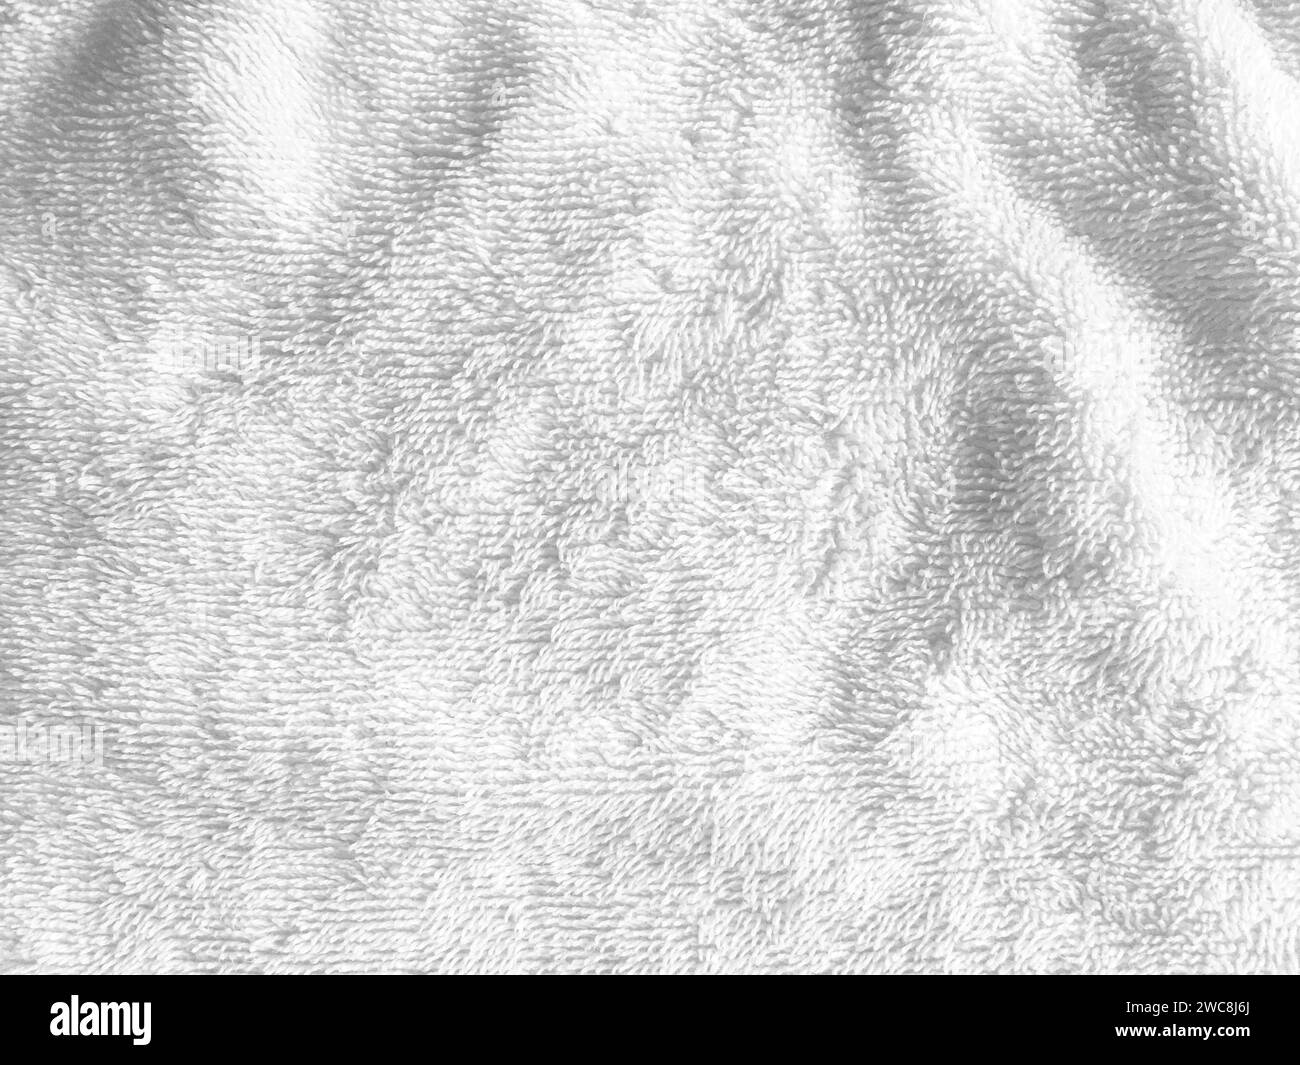 La superficie morbida e liscia del tessuto crea uno sfondo astratto e lussuoso, perfetto per un design sofisticato. Foto Stock